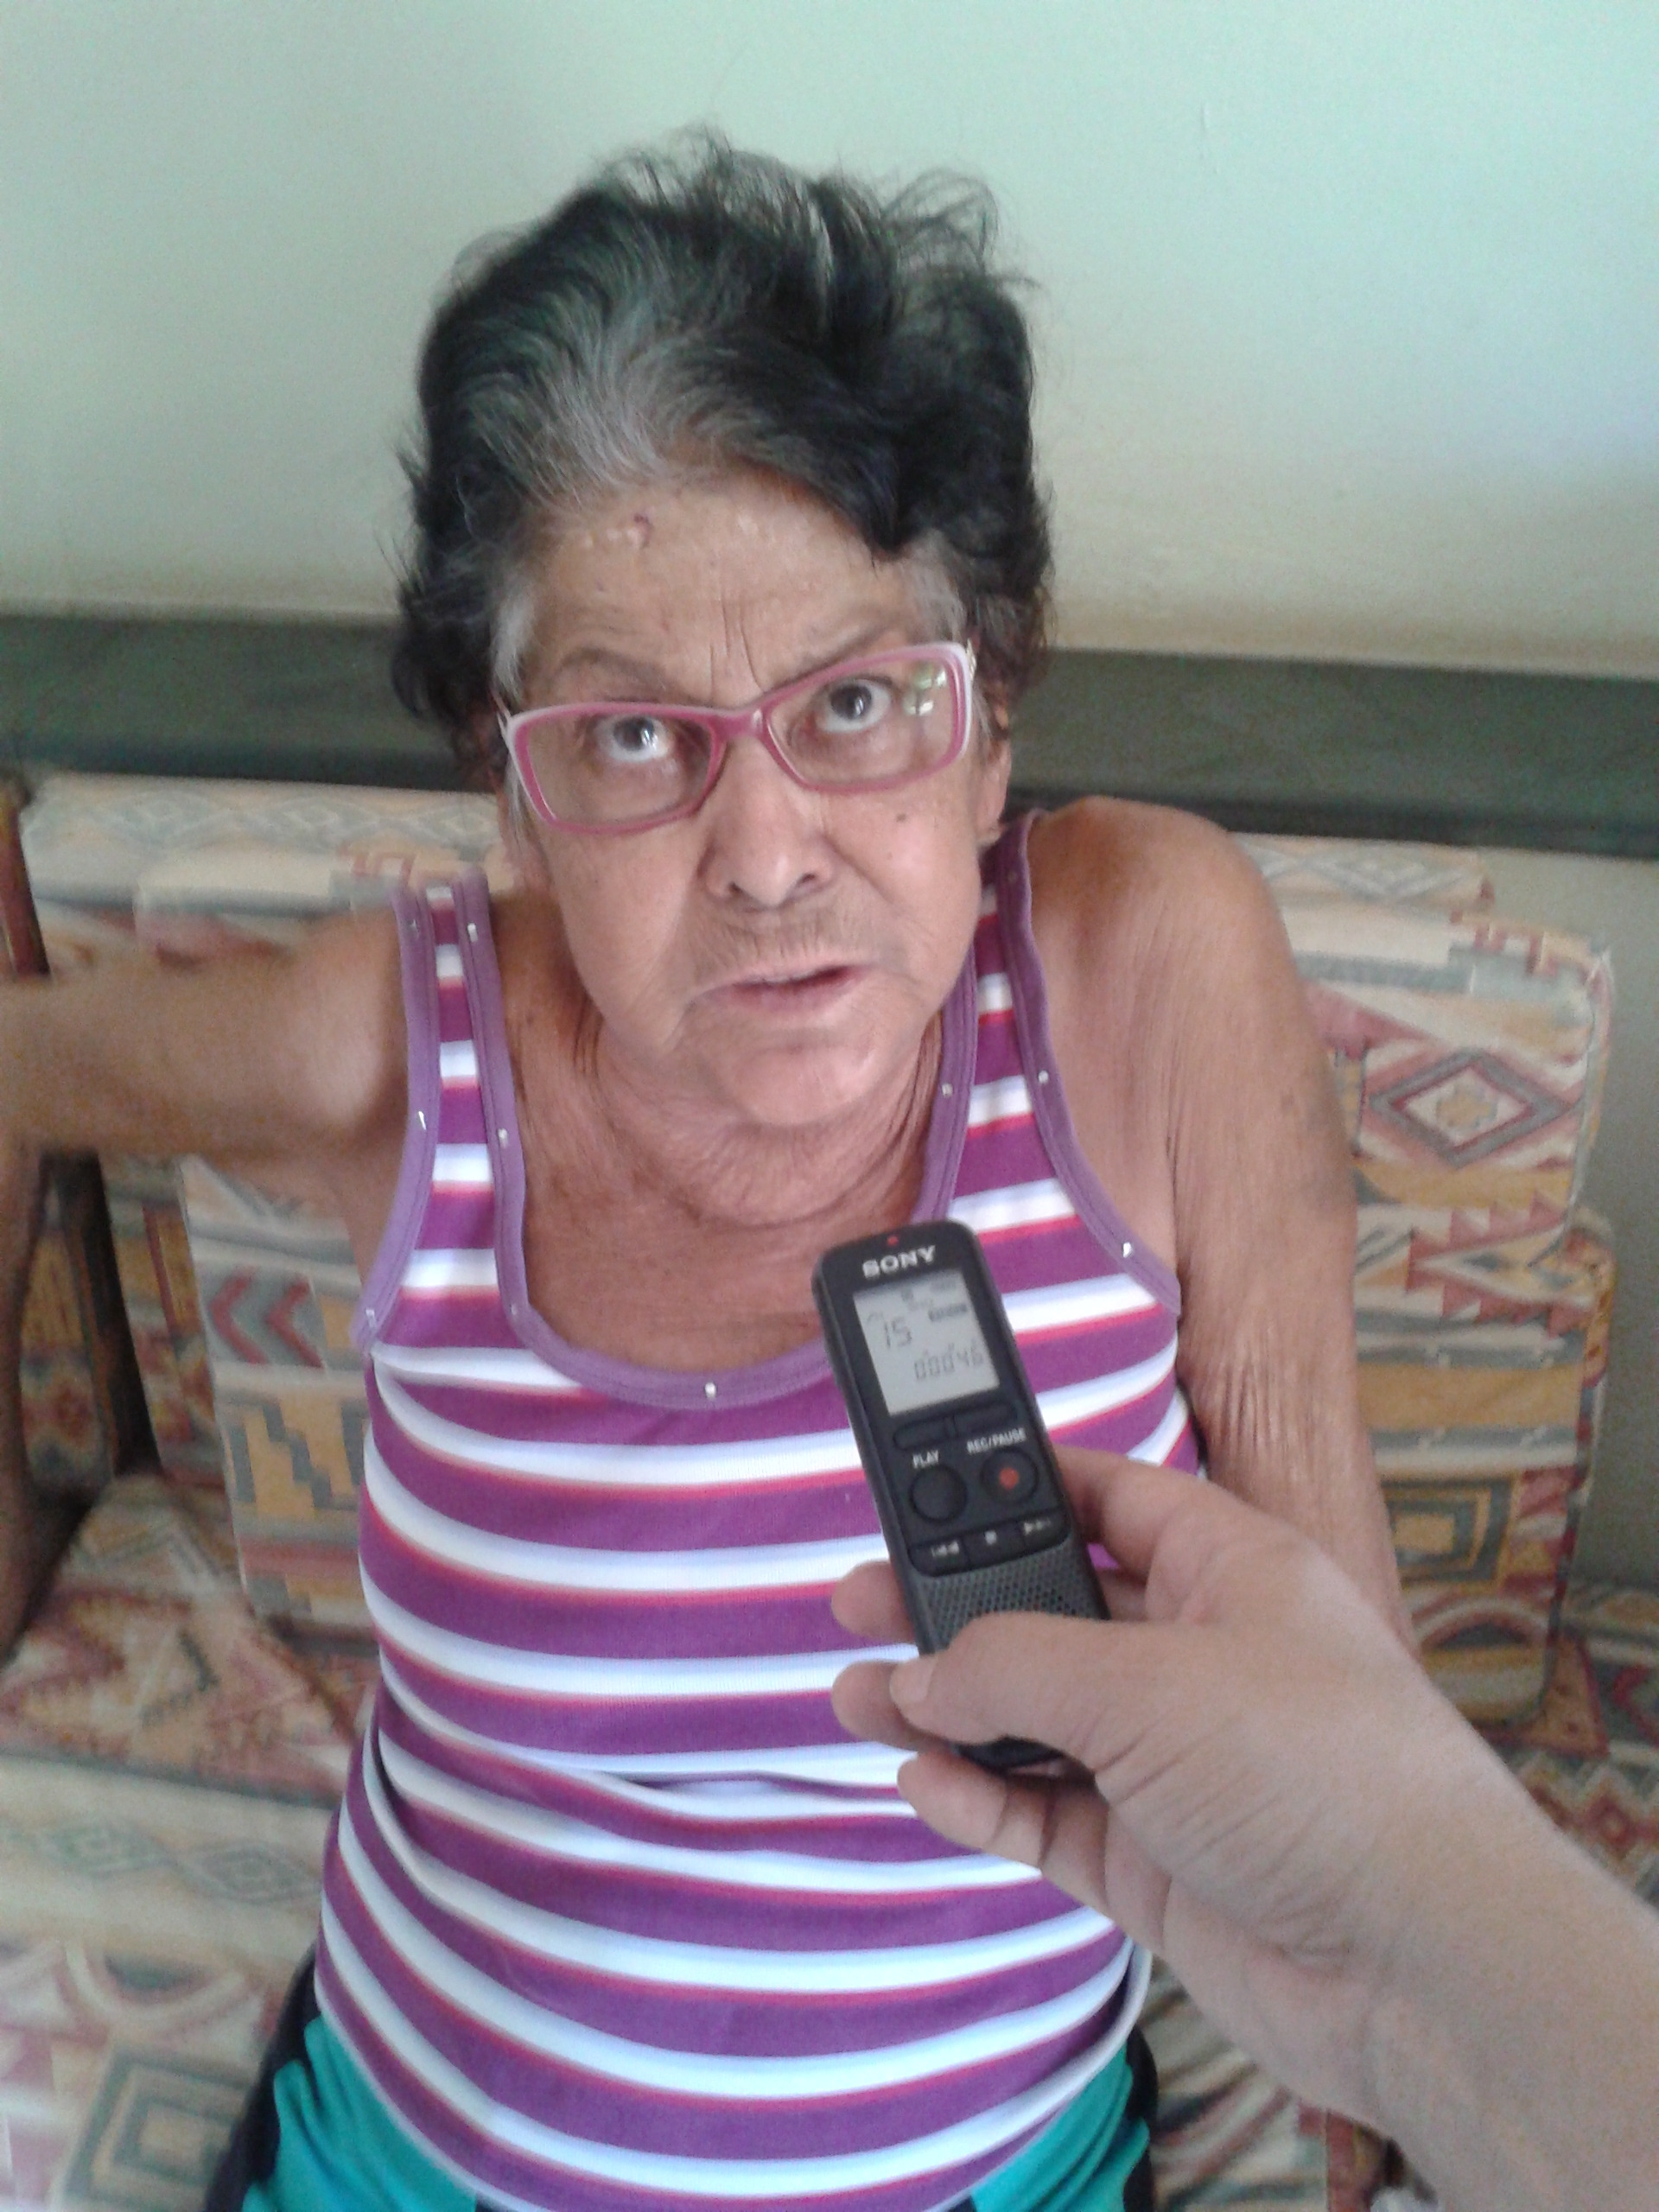  Neide Martins de 65 anos, esteve na Rádio Caçula para registrar sua reclamação e pedir ajuda para cuidar melhor de sua saúde.